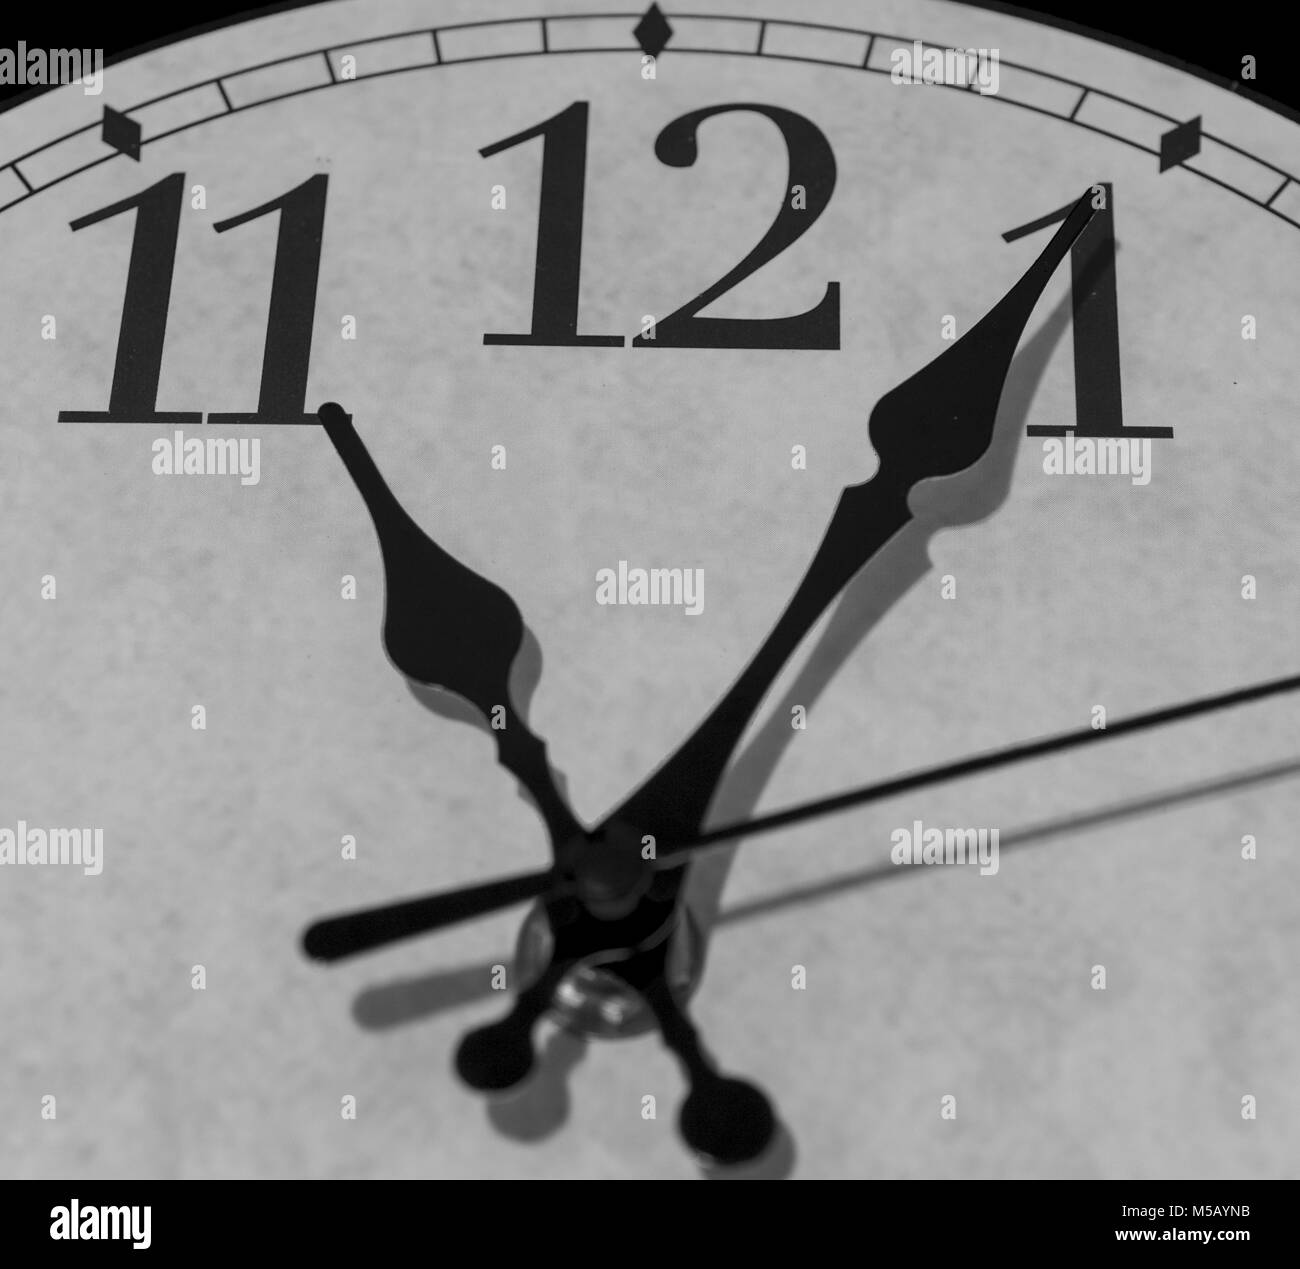 Gros plan sur les pointeurs d'une horloge marquant cinq minutes après 11 heures - le rendu noir et blanc Banque D'Images